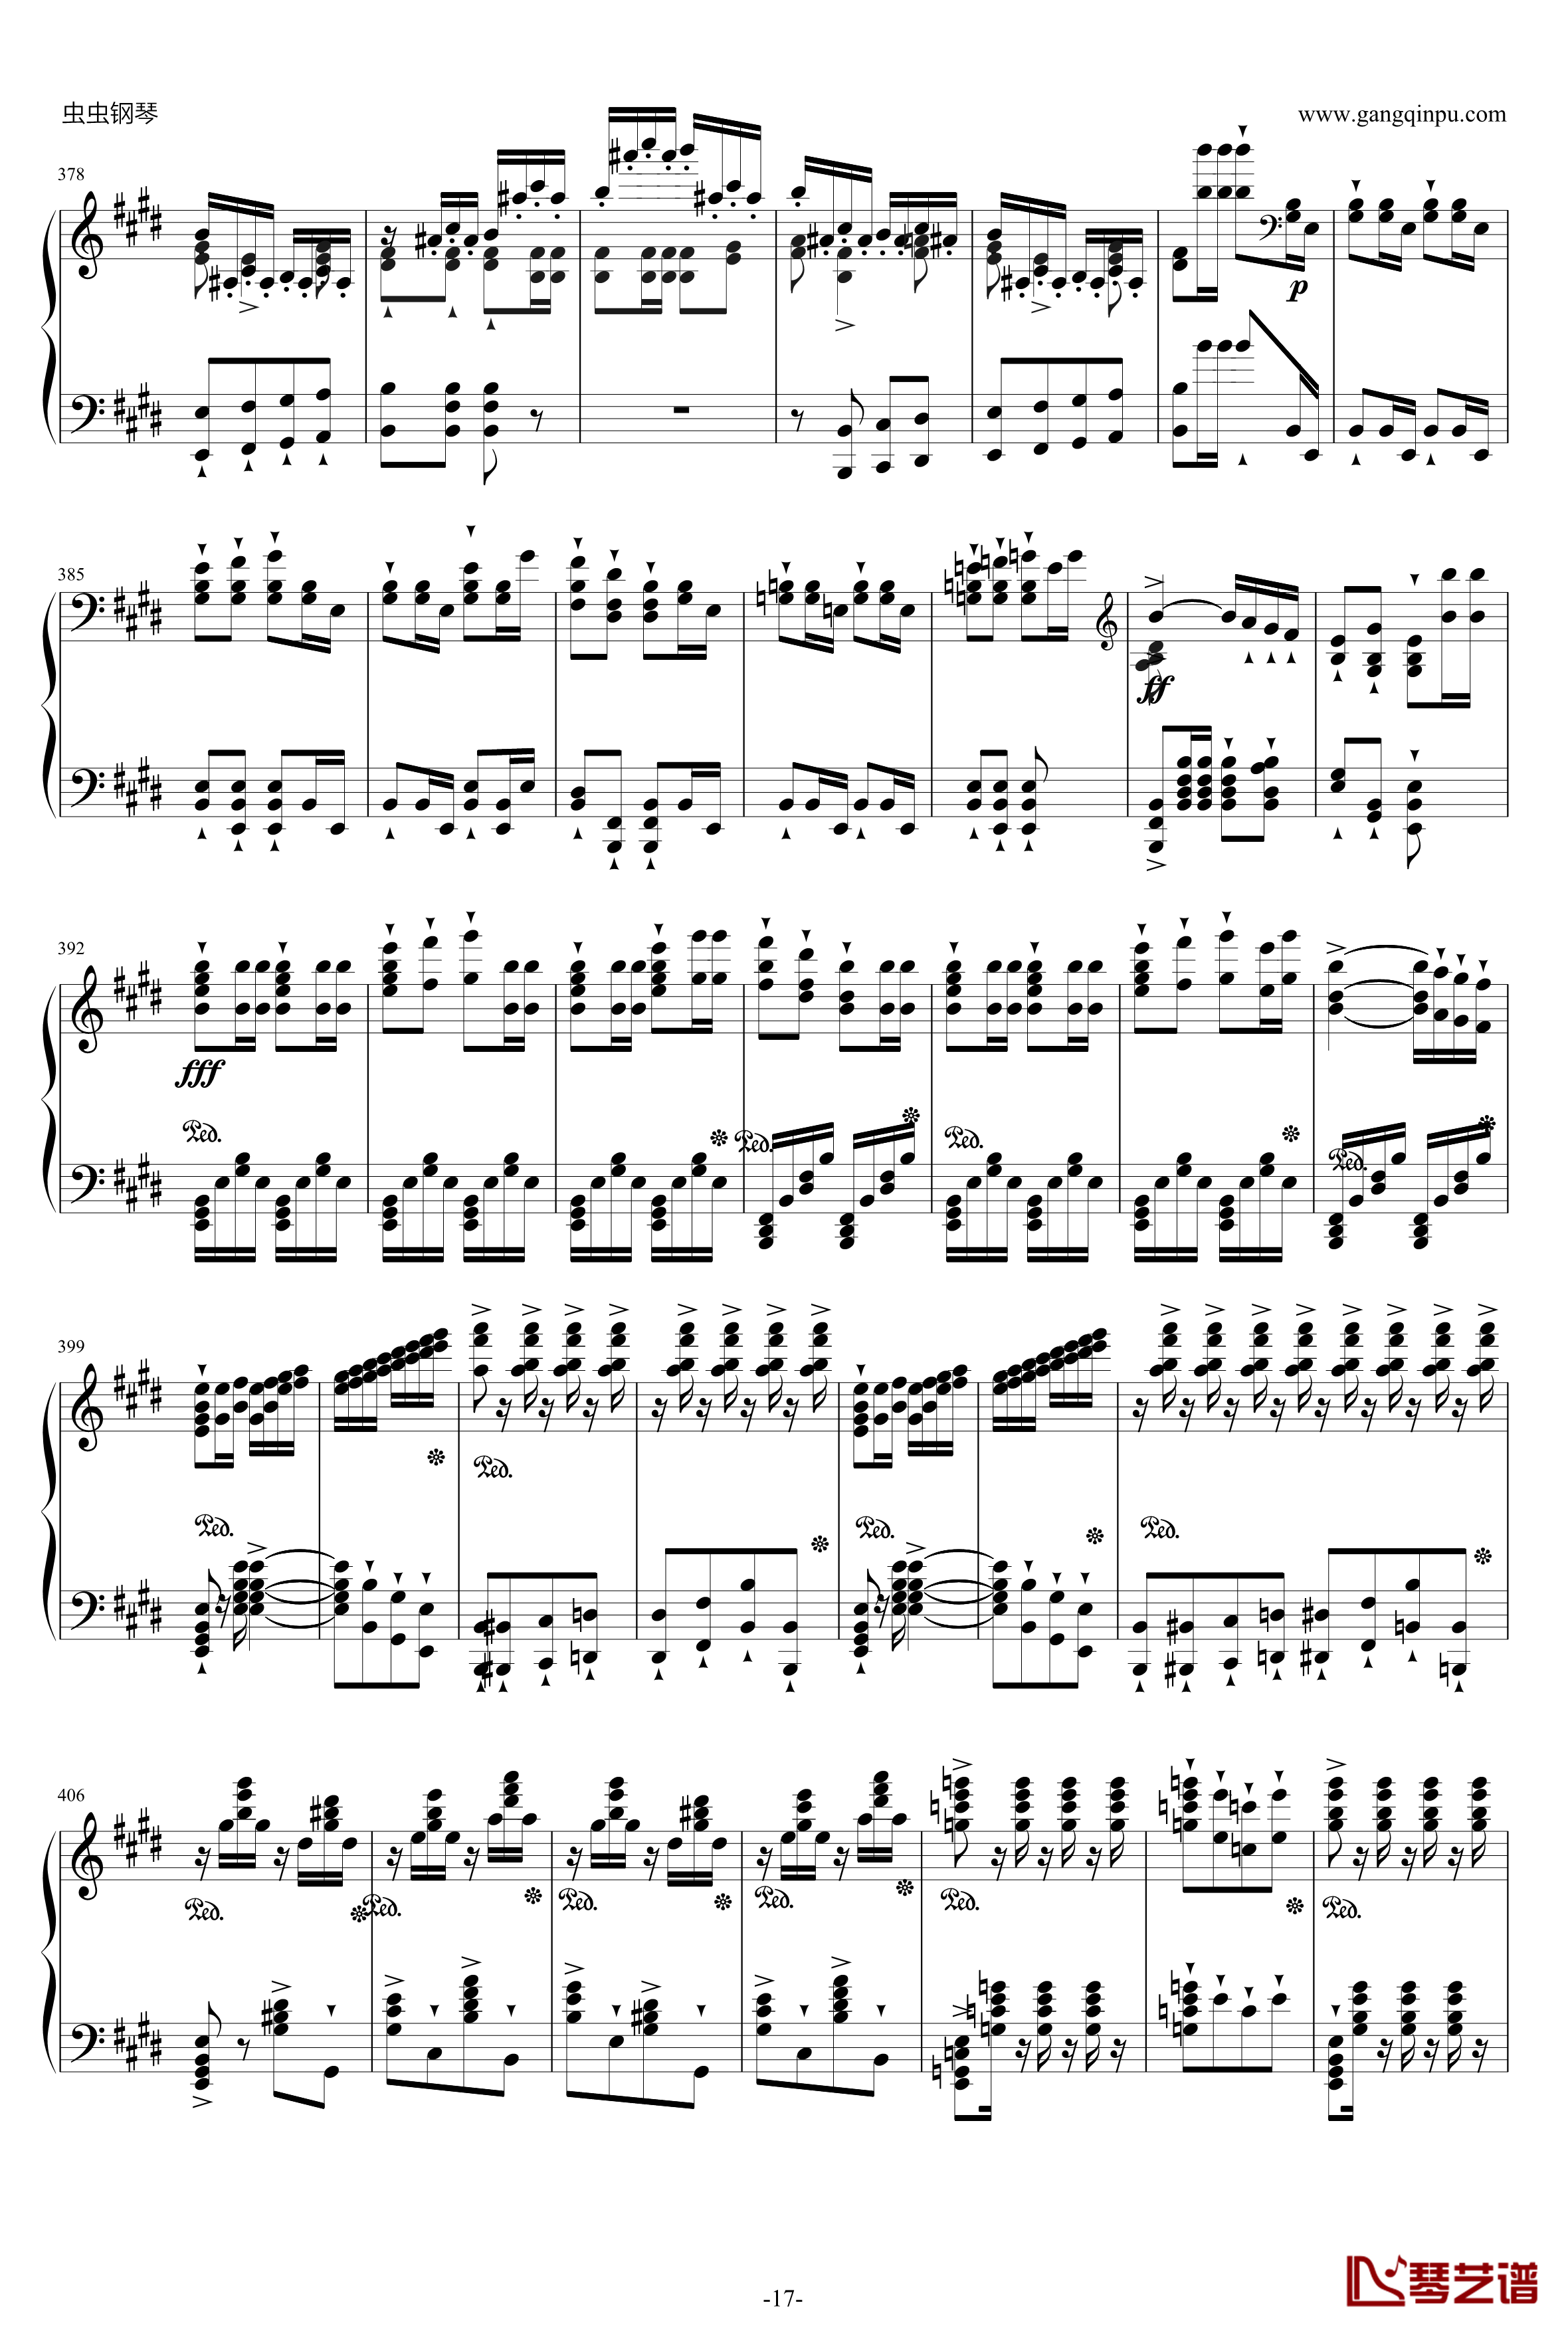 威廉·退尔序曲钢琴谱-李斯特S.55217